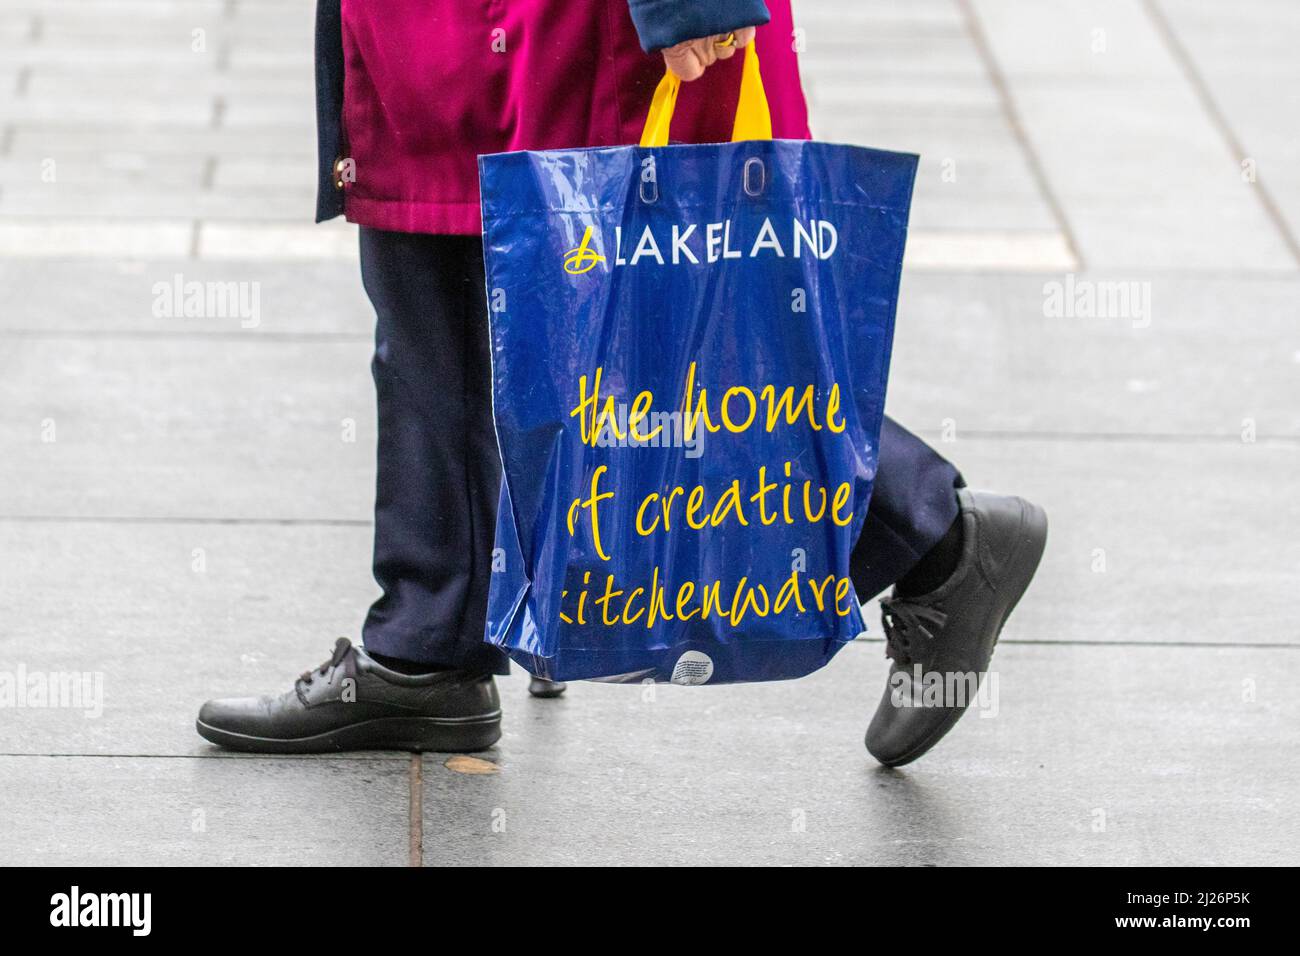 Blue Lakeland Kitchenware Stores Bag for Life. reusable bag 100% ...